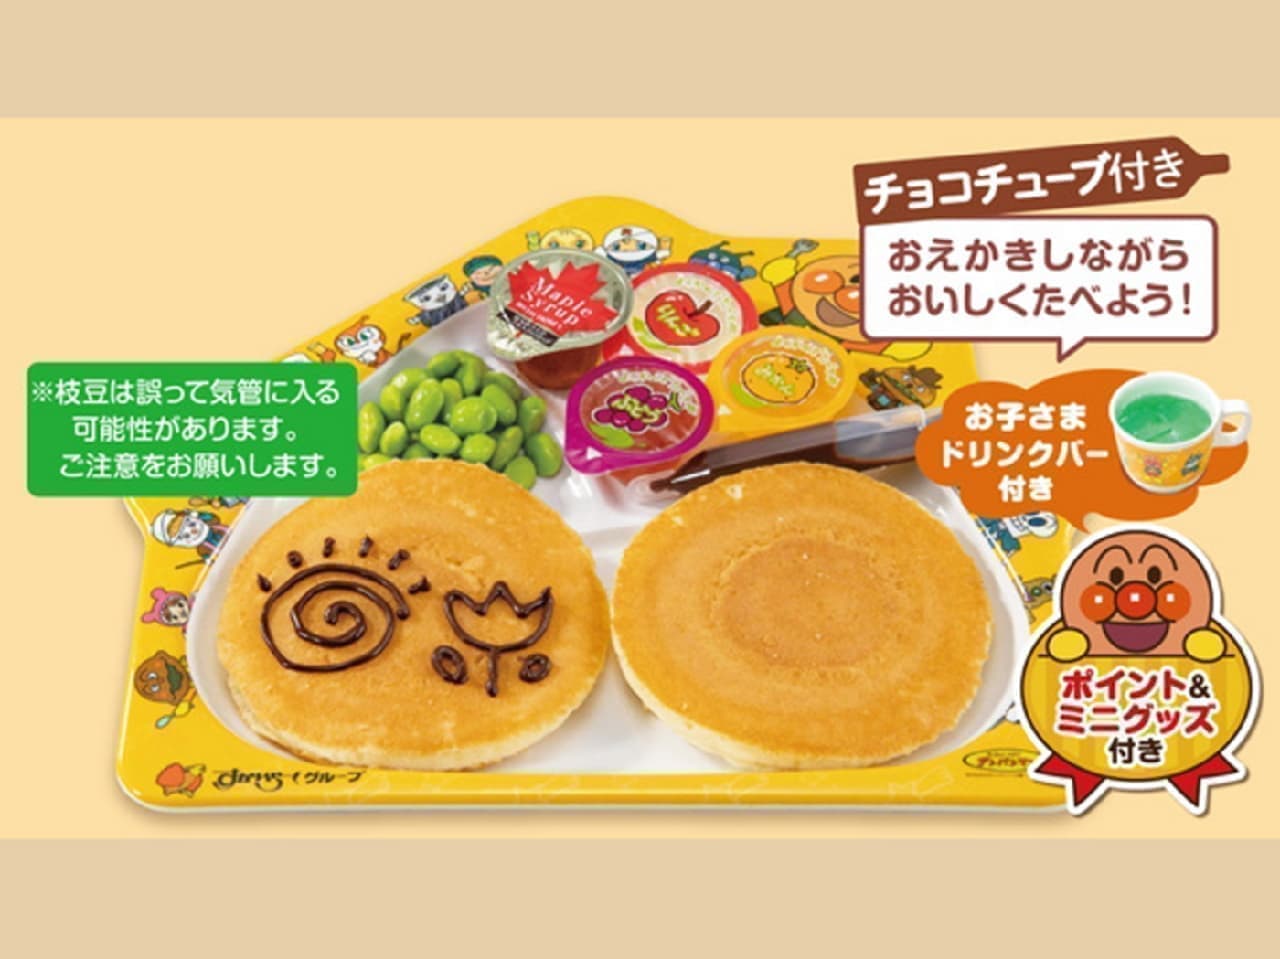 Gusto "Kids Pancake Plate